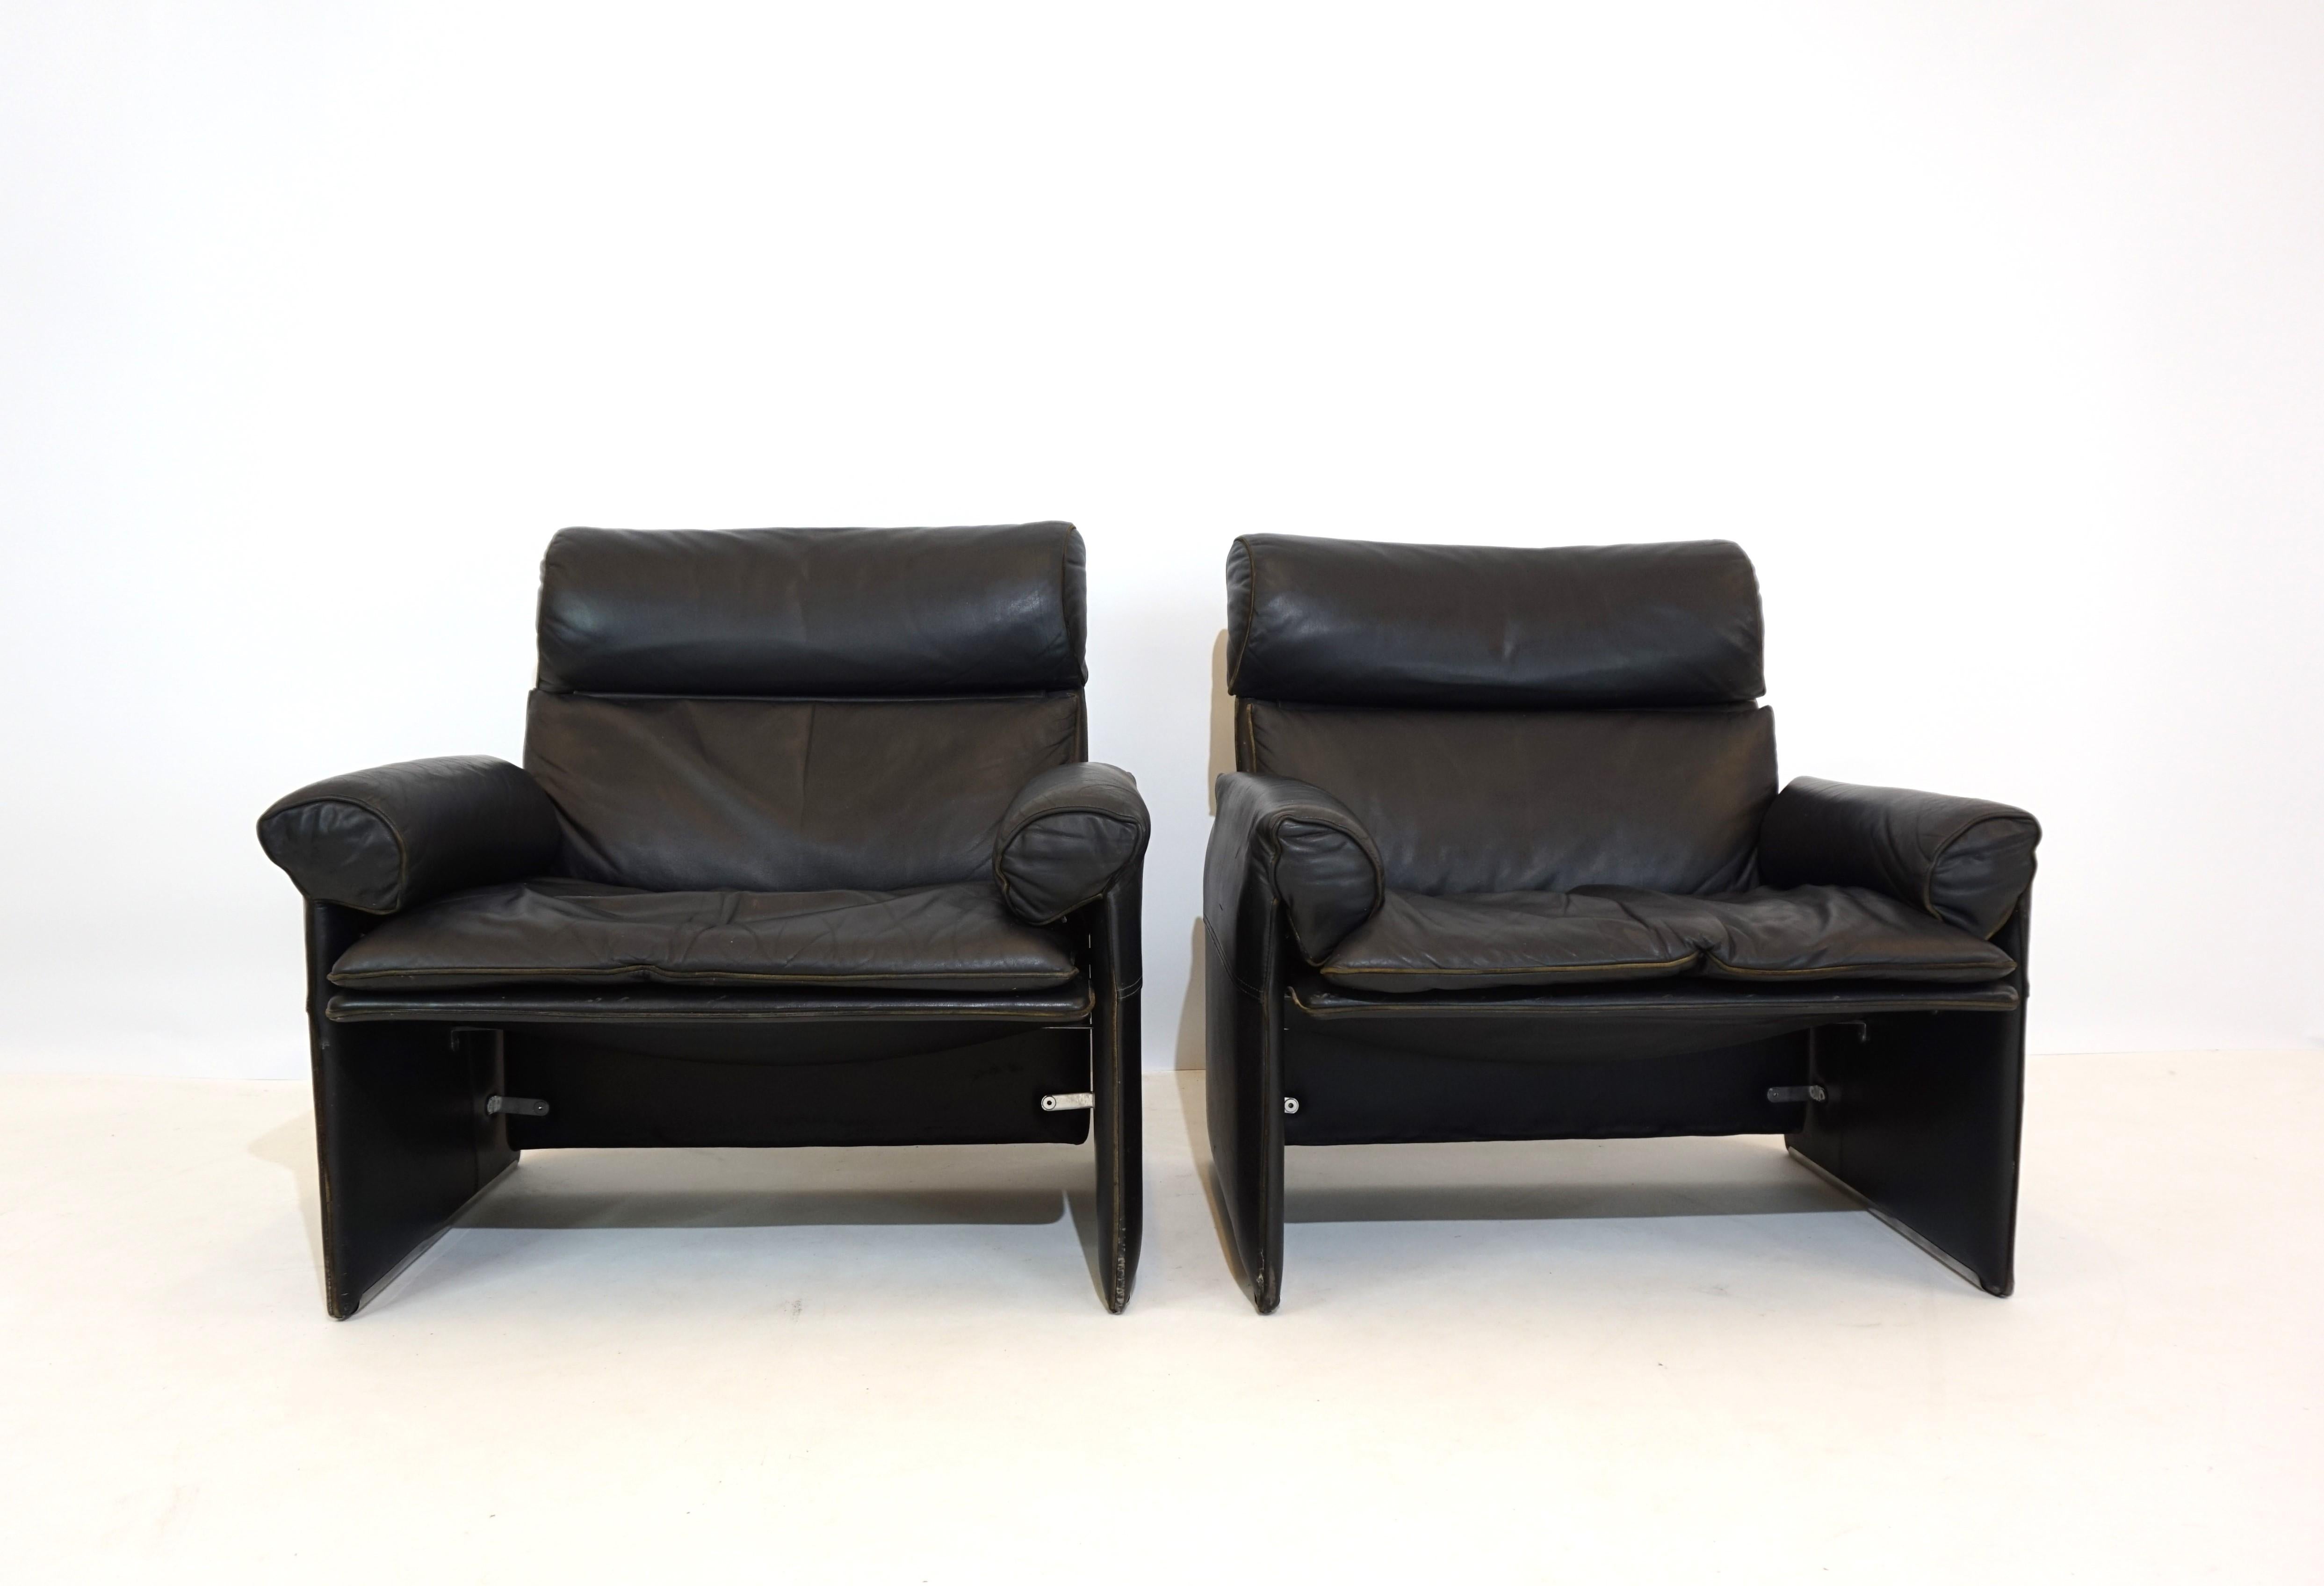 Ces deux fauteuils Condit des années 70 sont en bon état. Le cuir noir souple ne présente que de légers signes d'usure et de patine. Les dossiers des sièges sont légèrement élastiques et les fauteuils offrent un très bon confort d'assise.

 

Le